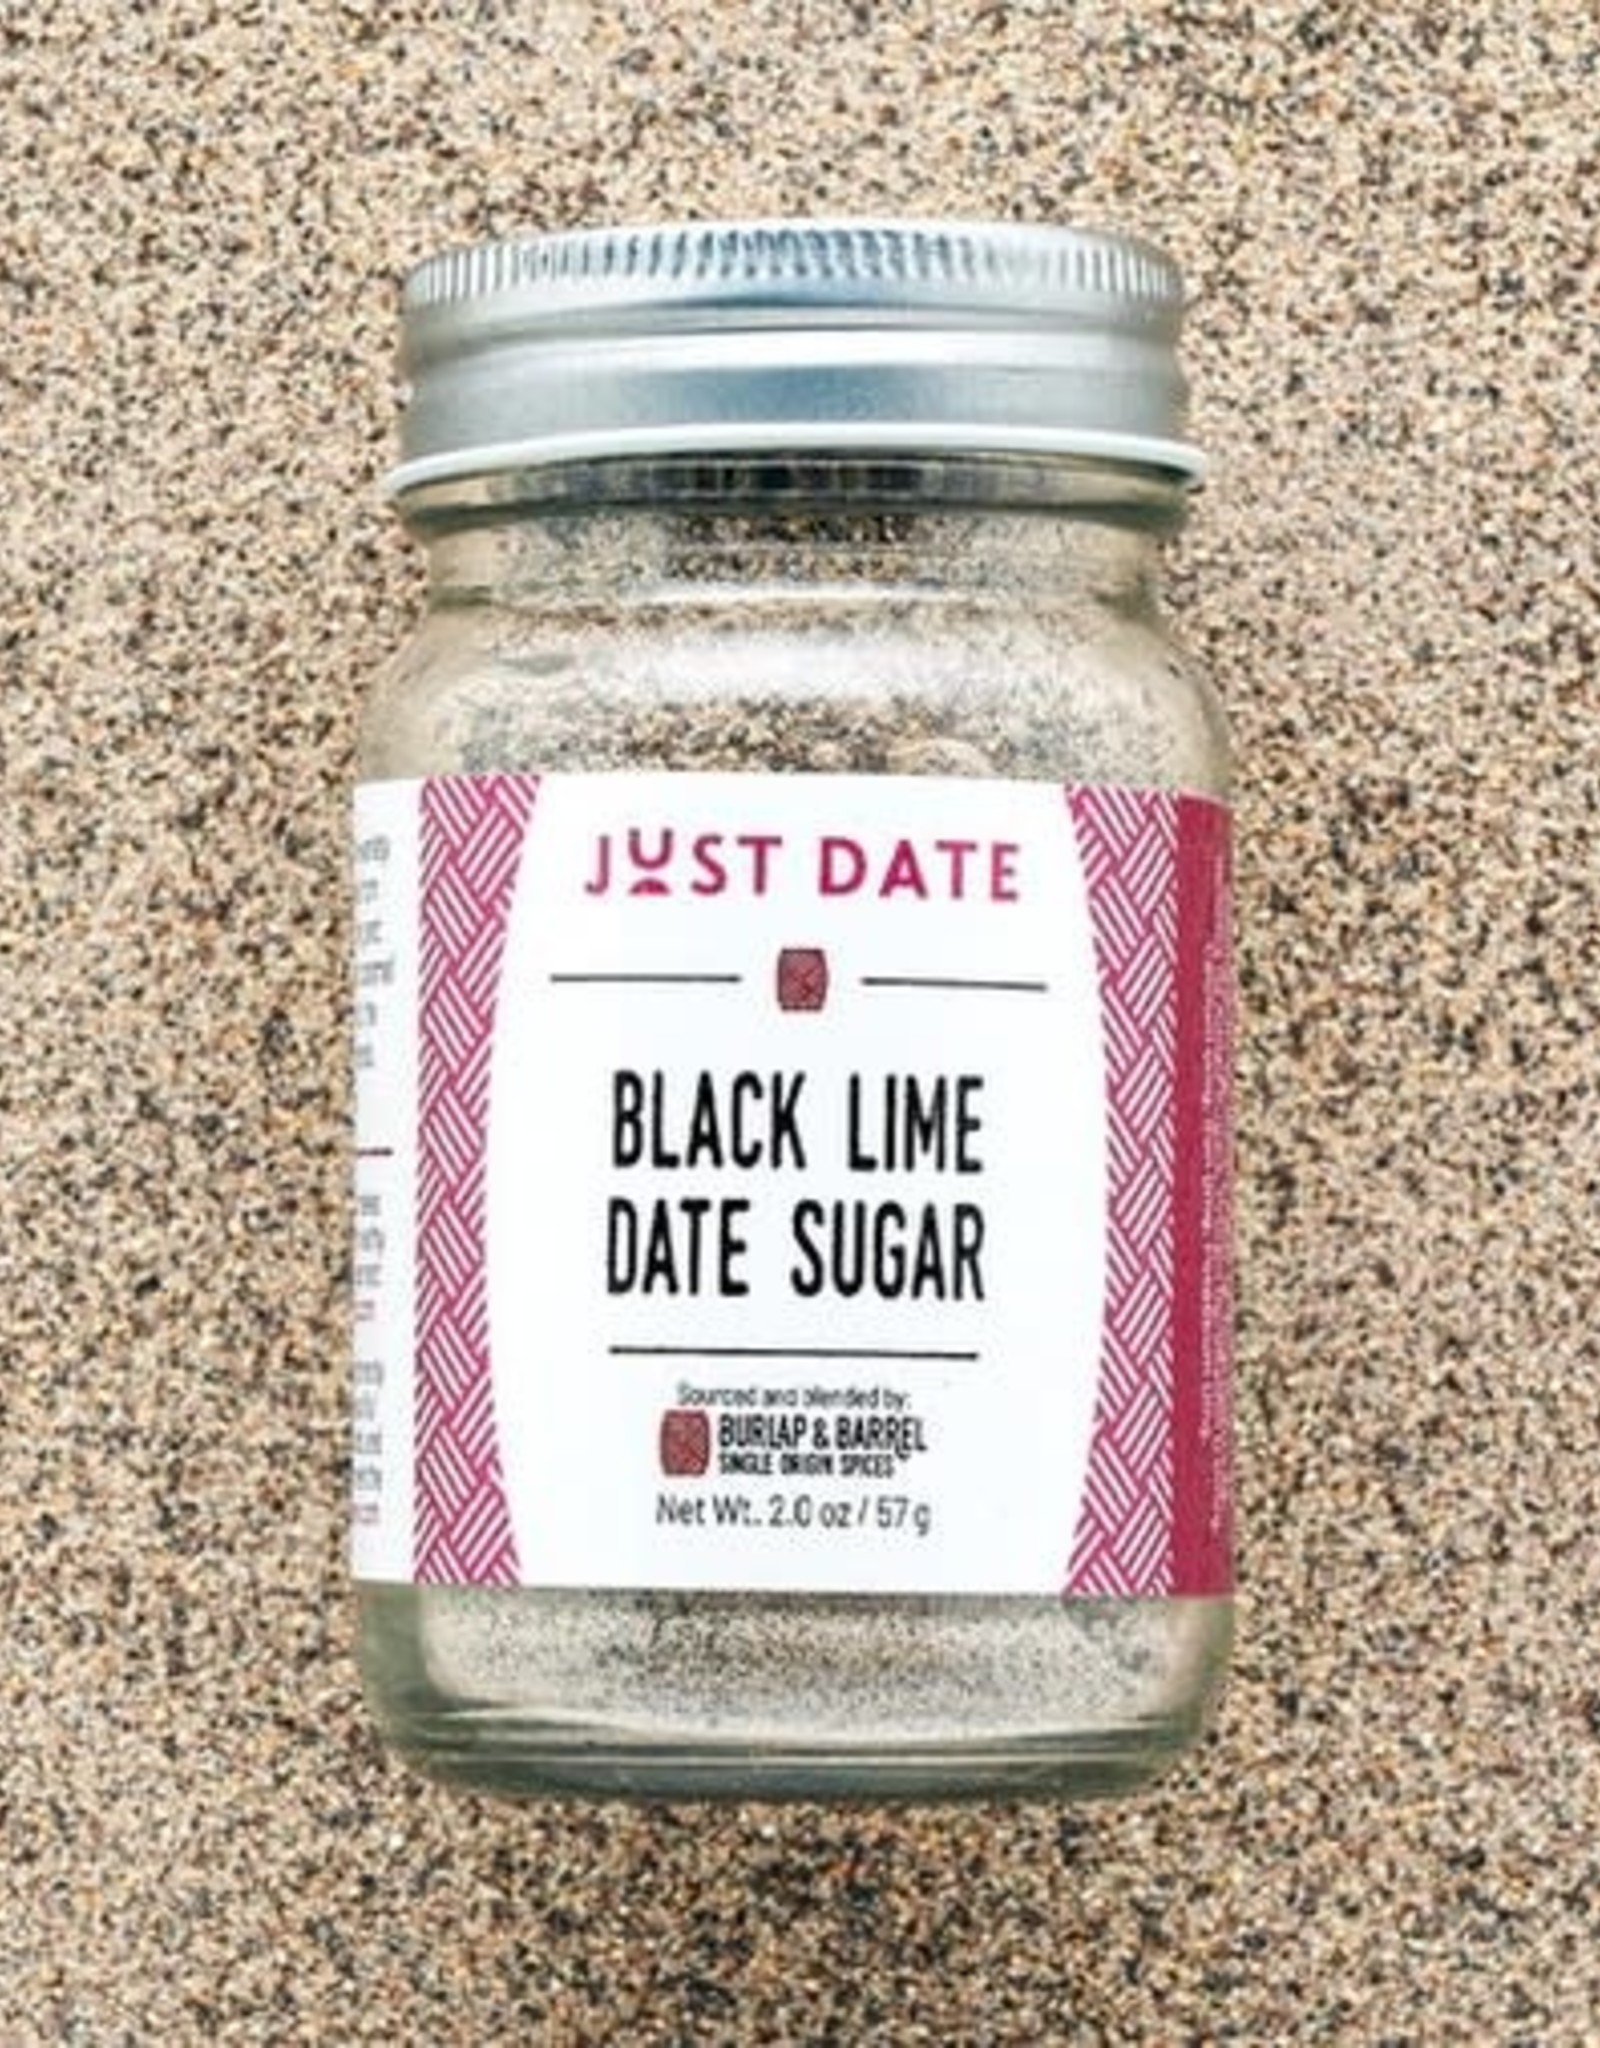 Burlap & Barrel Black Lime Date Sugar